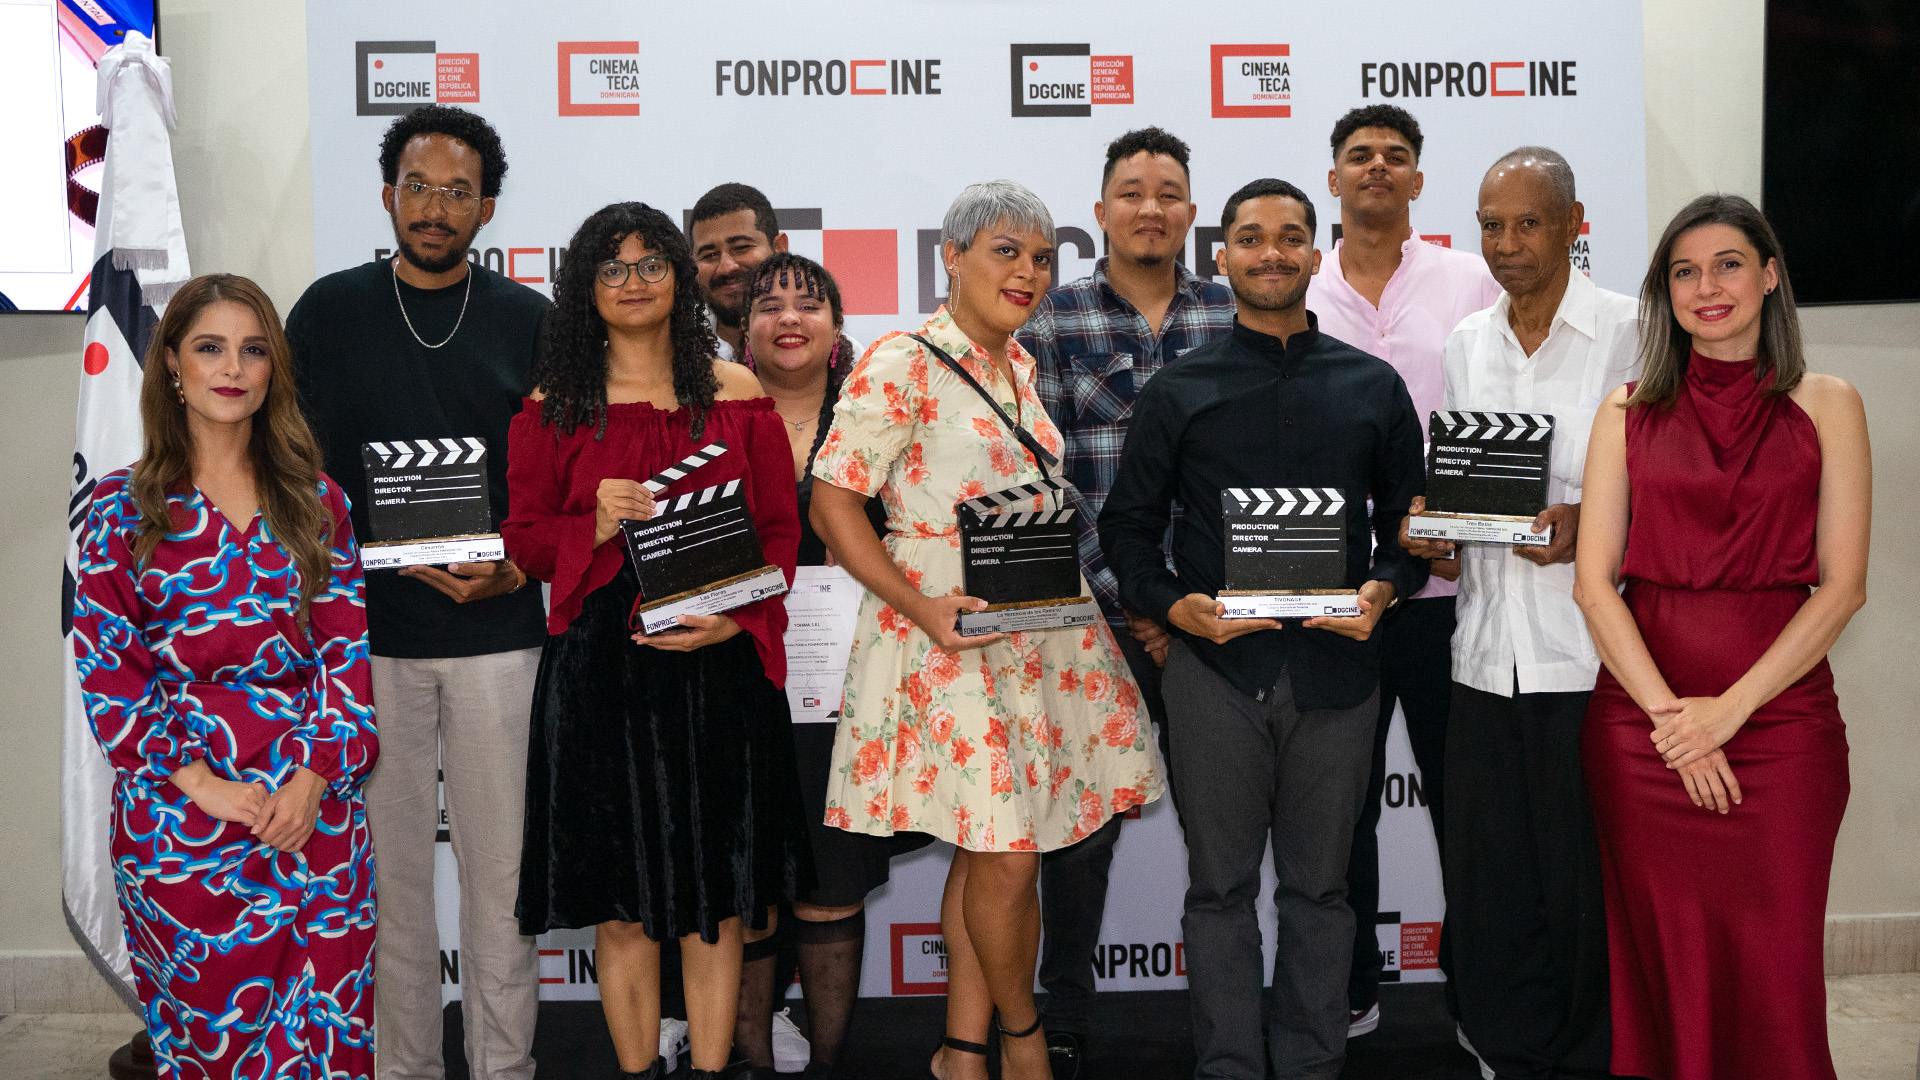 REPÚBLICA DOMINICANA: Dirección General de Cine premia ganadores del Fonprocine 2023 con más de 18.5 MM